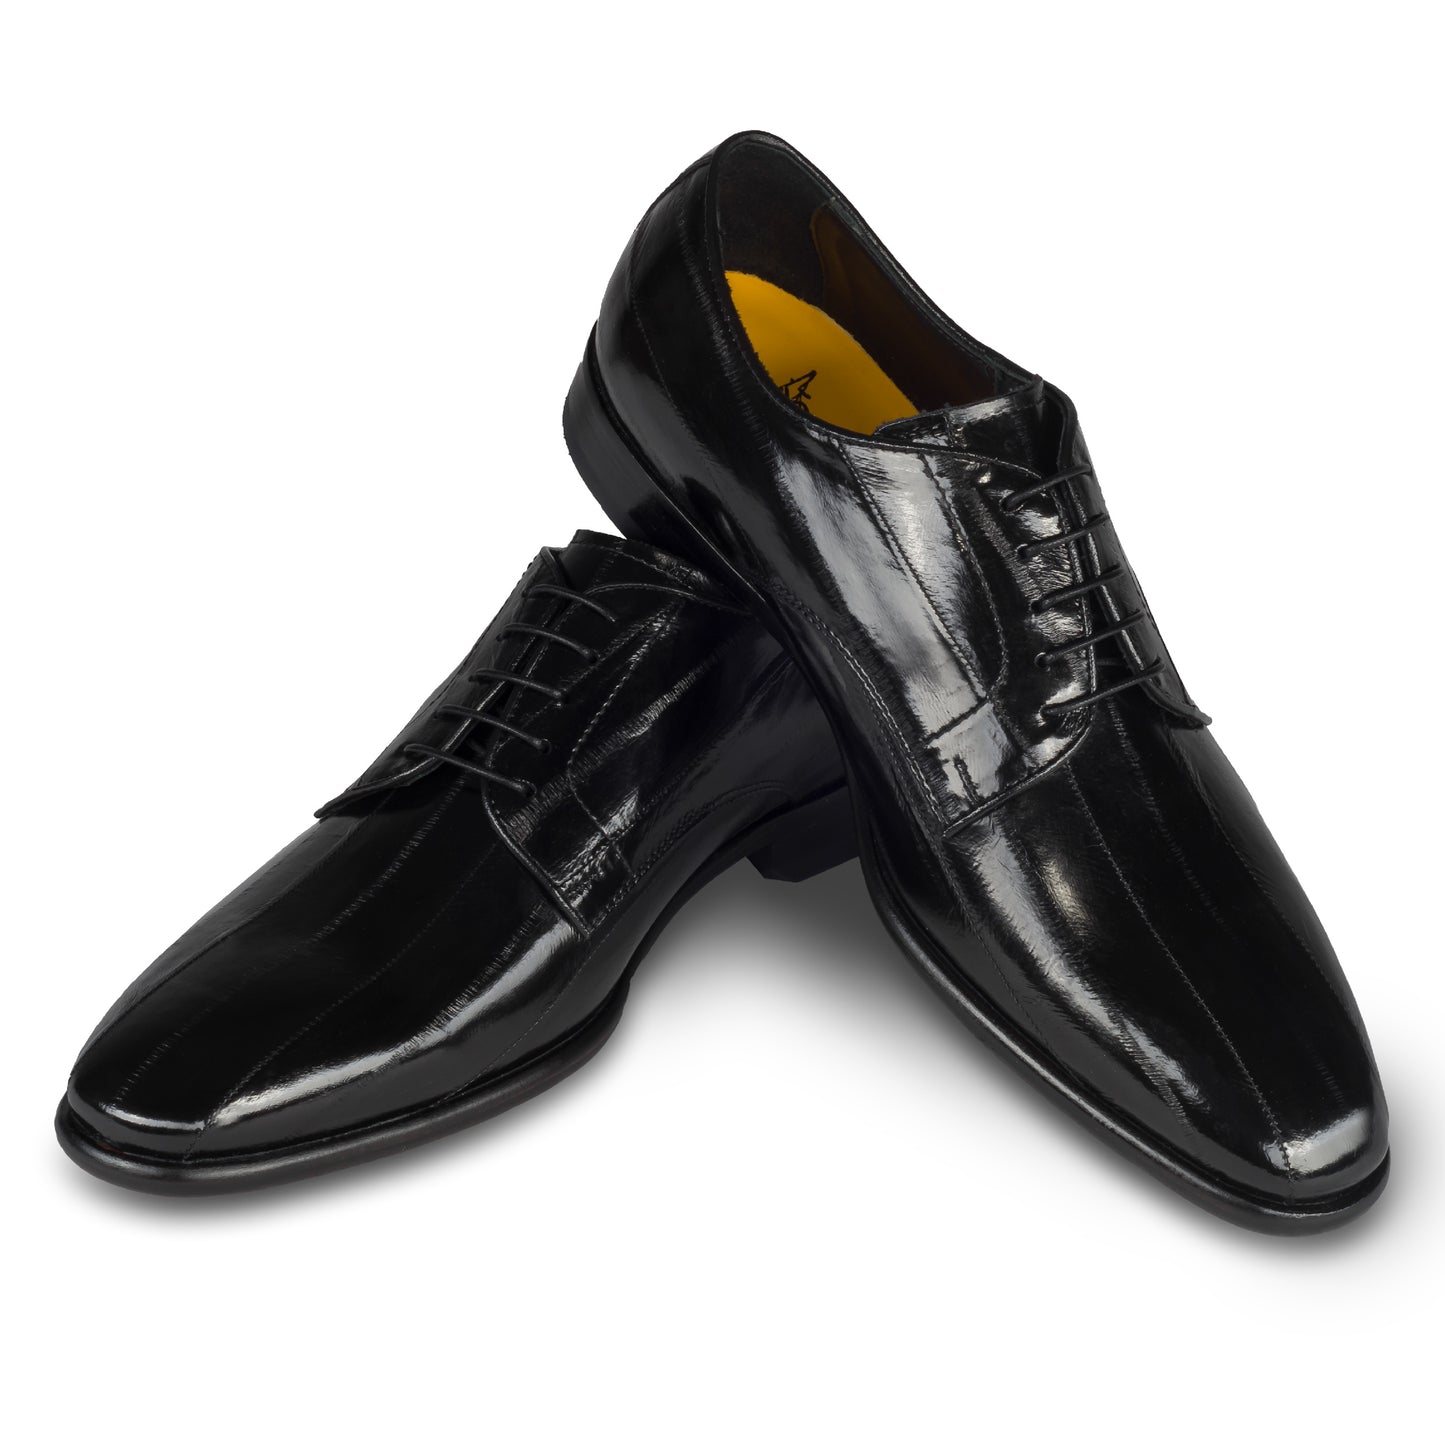 Lorenzi - Extravaganter Herren Derby Schnürschuh aus schwarzem Aal-Leder. Handgefertigt und Durchgenäht. Paarweise Ansicht Schuhe überkreuzt aufgestellt.